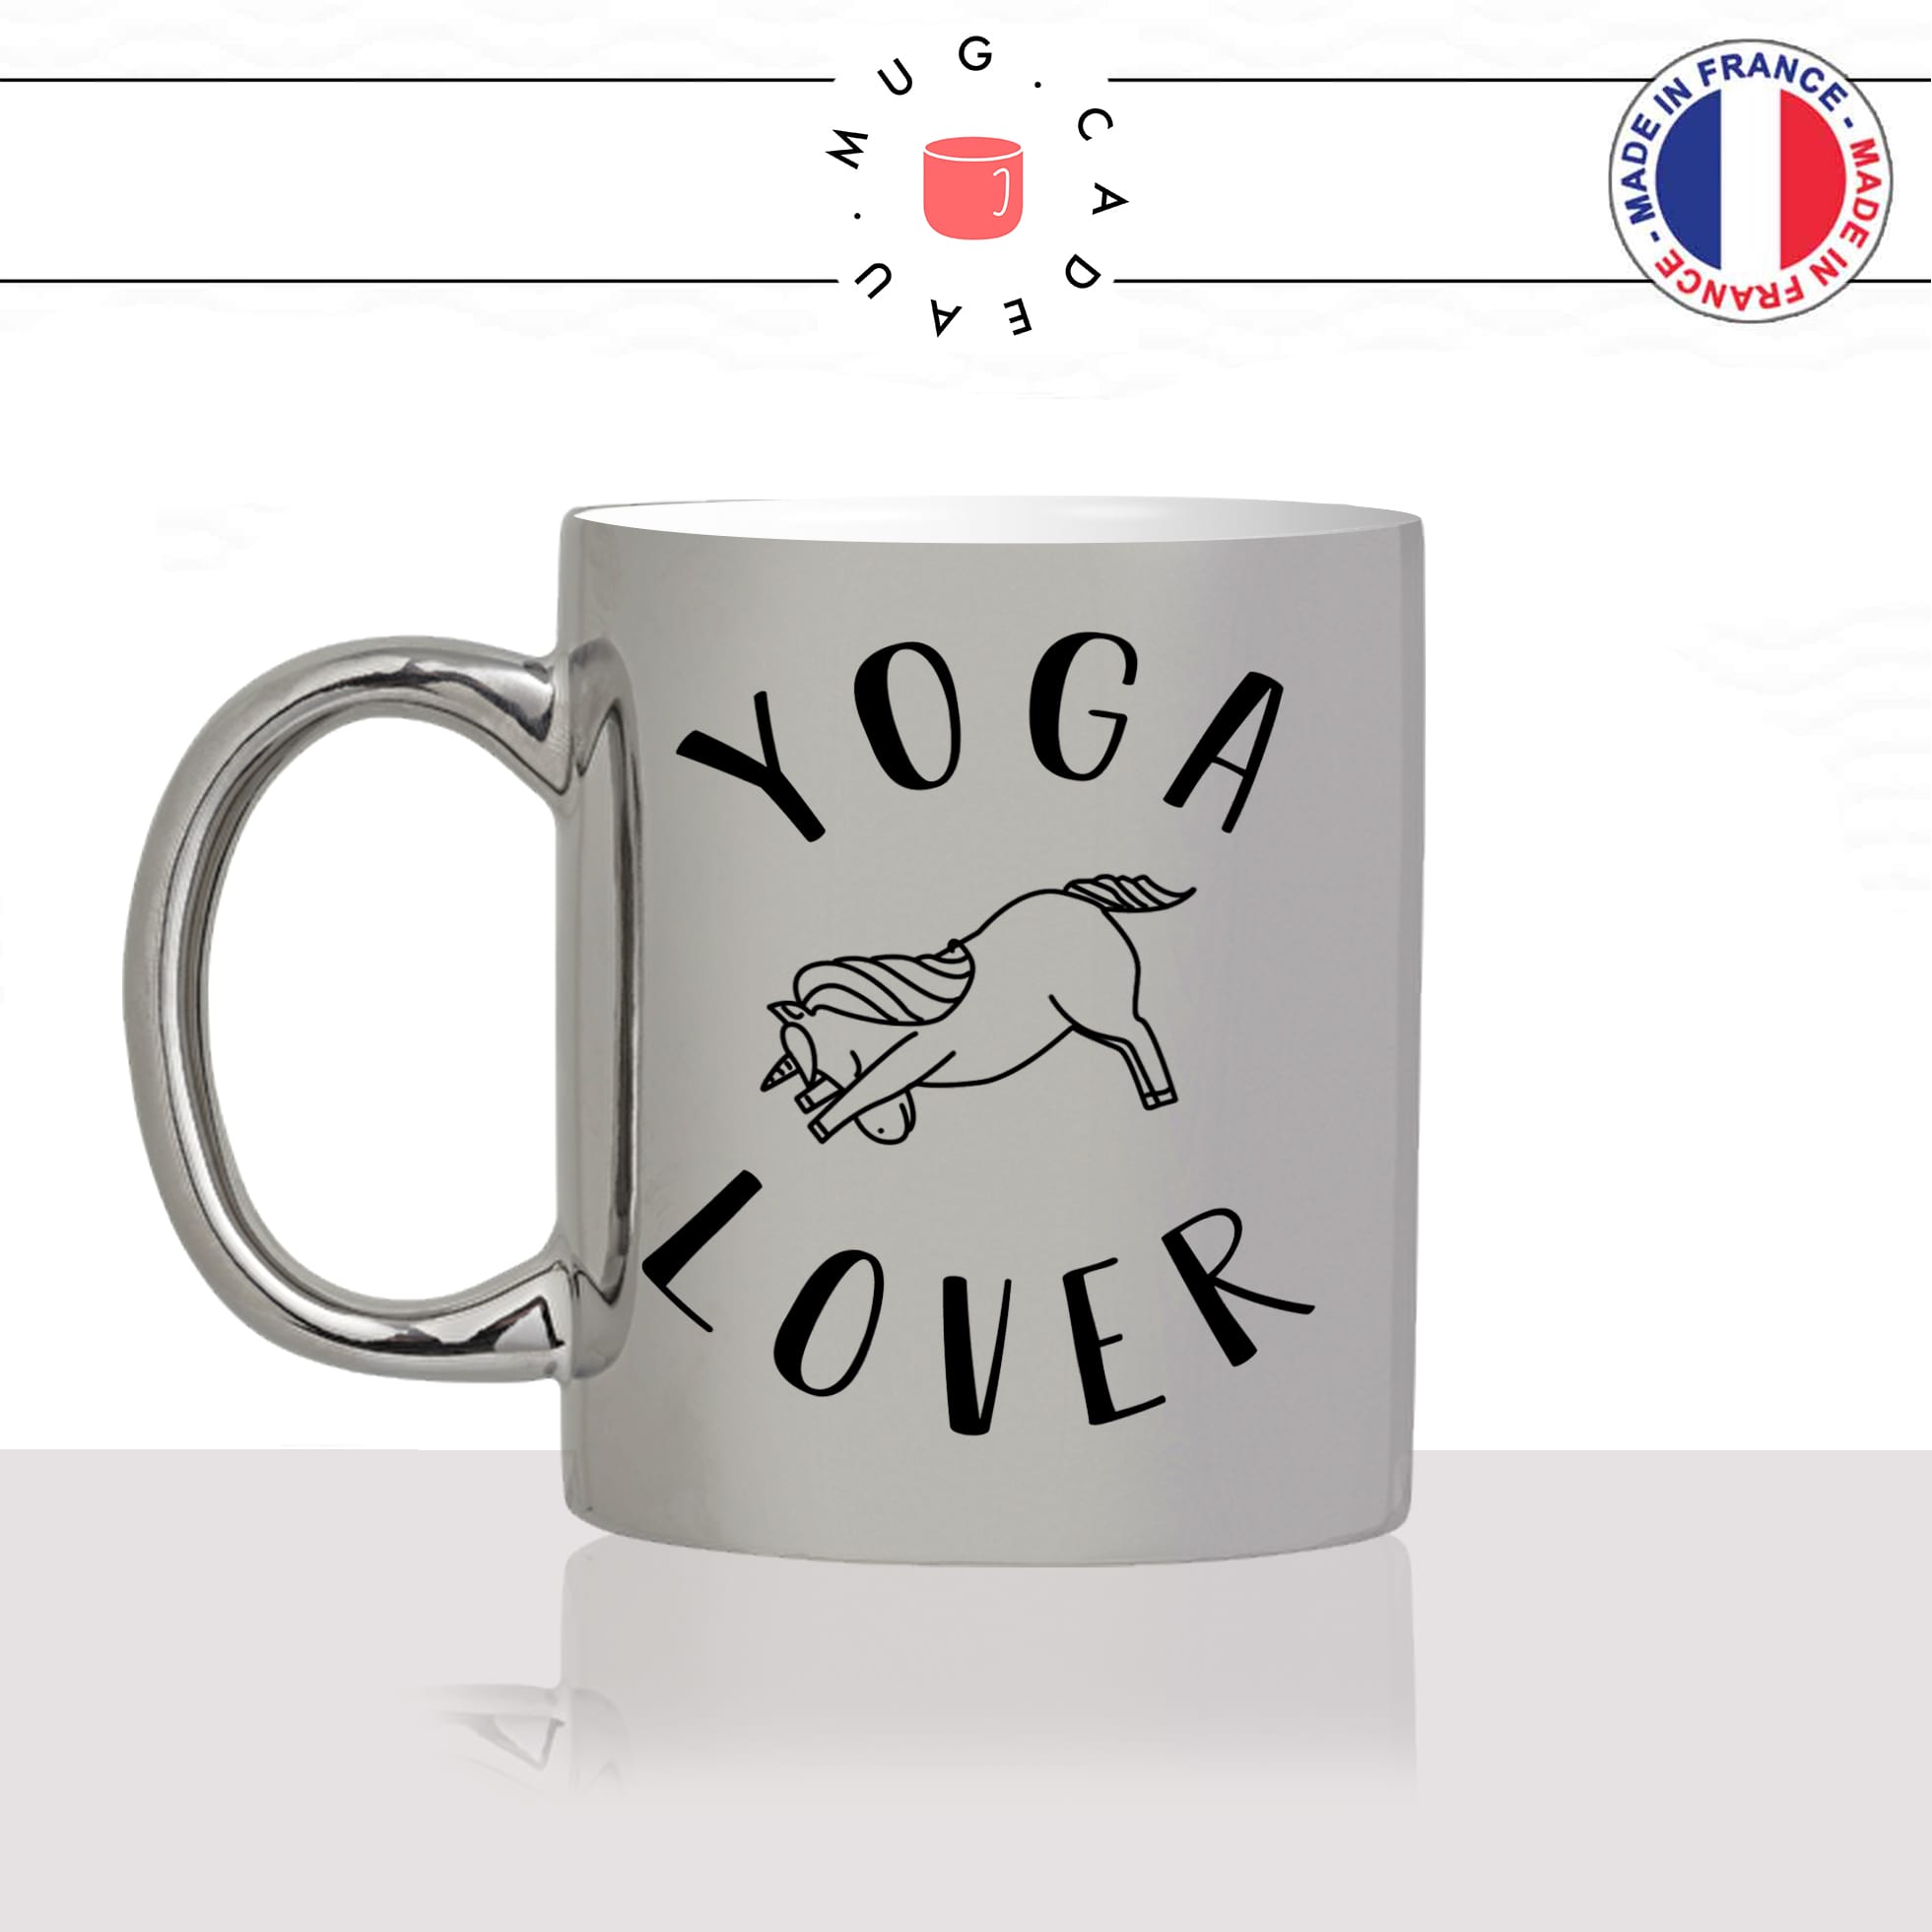 mug-tasse-silver-argenté-argent-licorne-pose-yoga-lover-sport-pilate-meditation-mignon-animal-noir-fun-café-thé-idée-cadeau-original-personnalisé-min